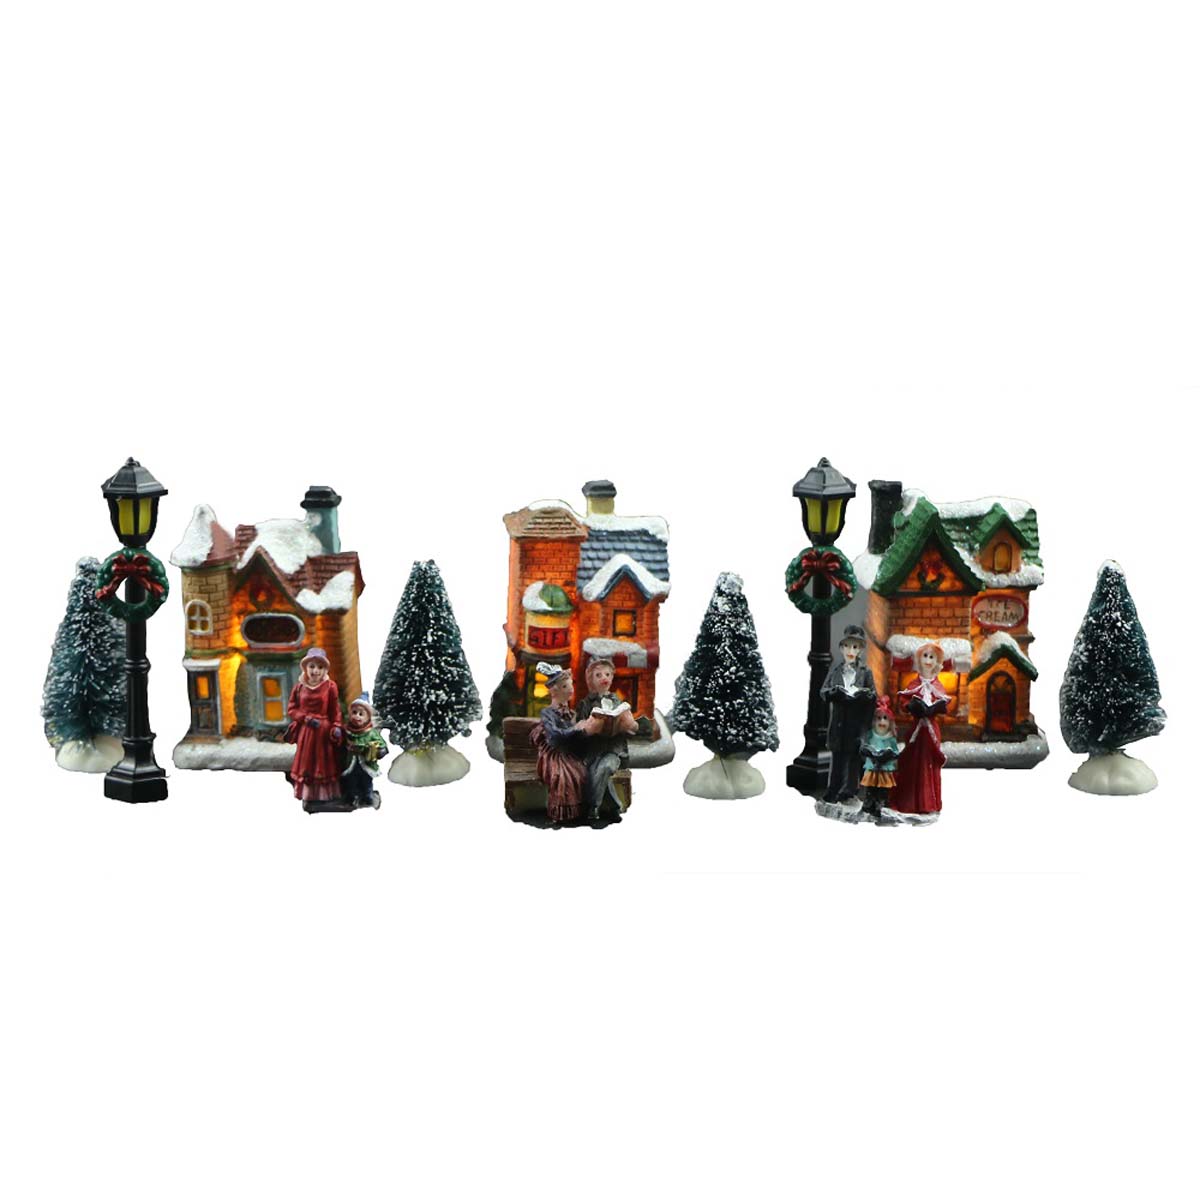 Villaggi di Natale – I personaggi del villaggio